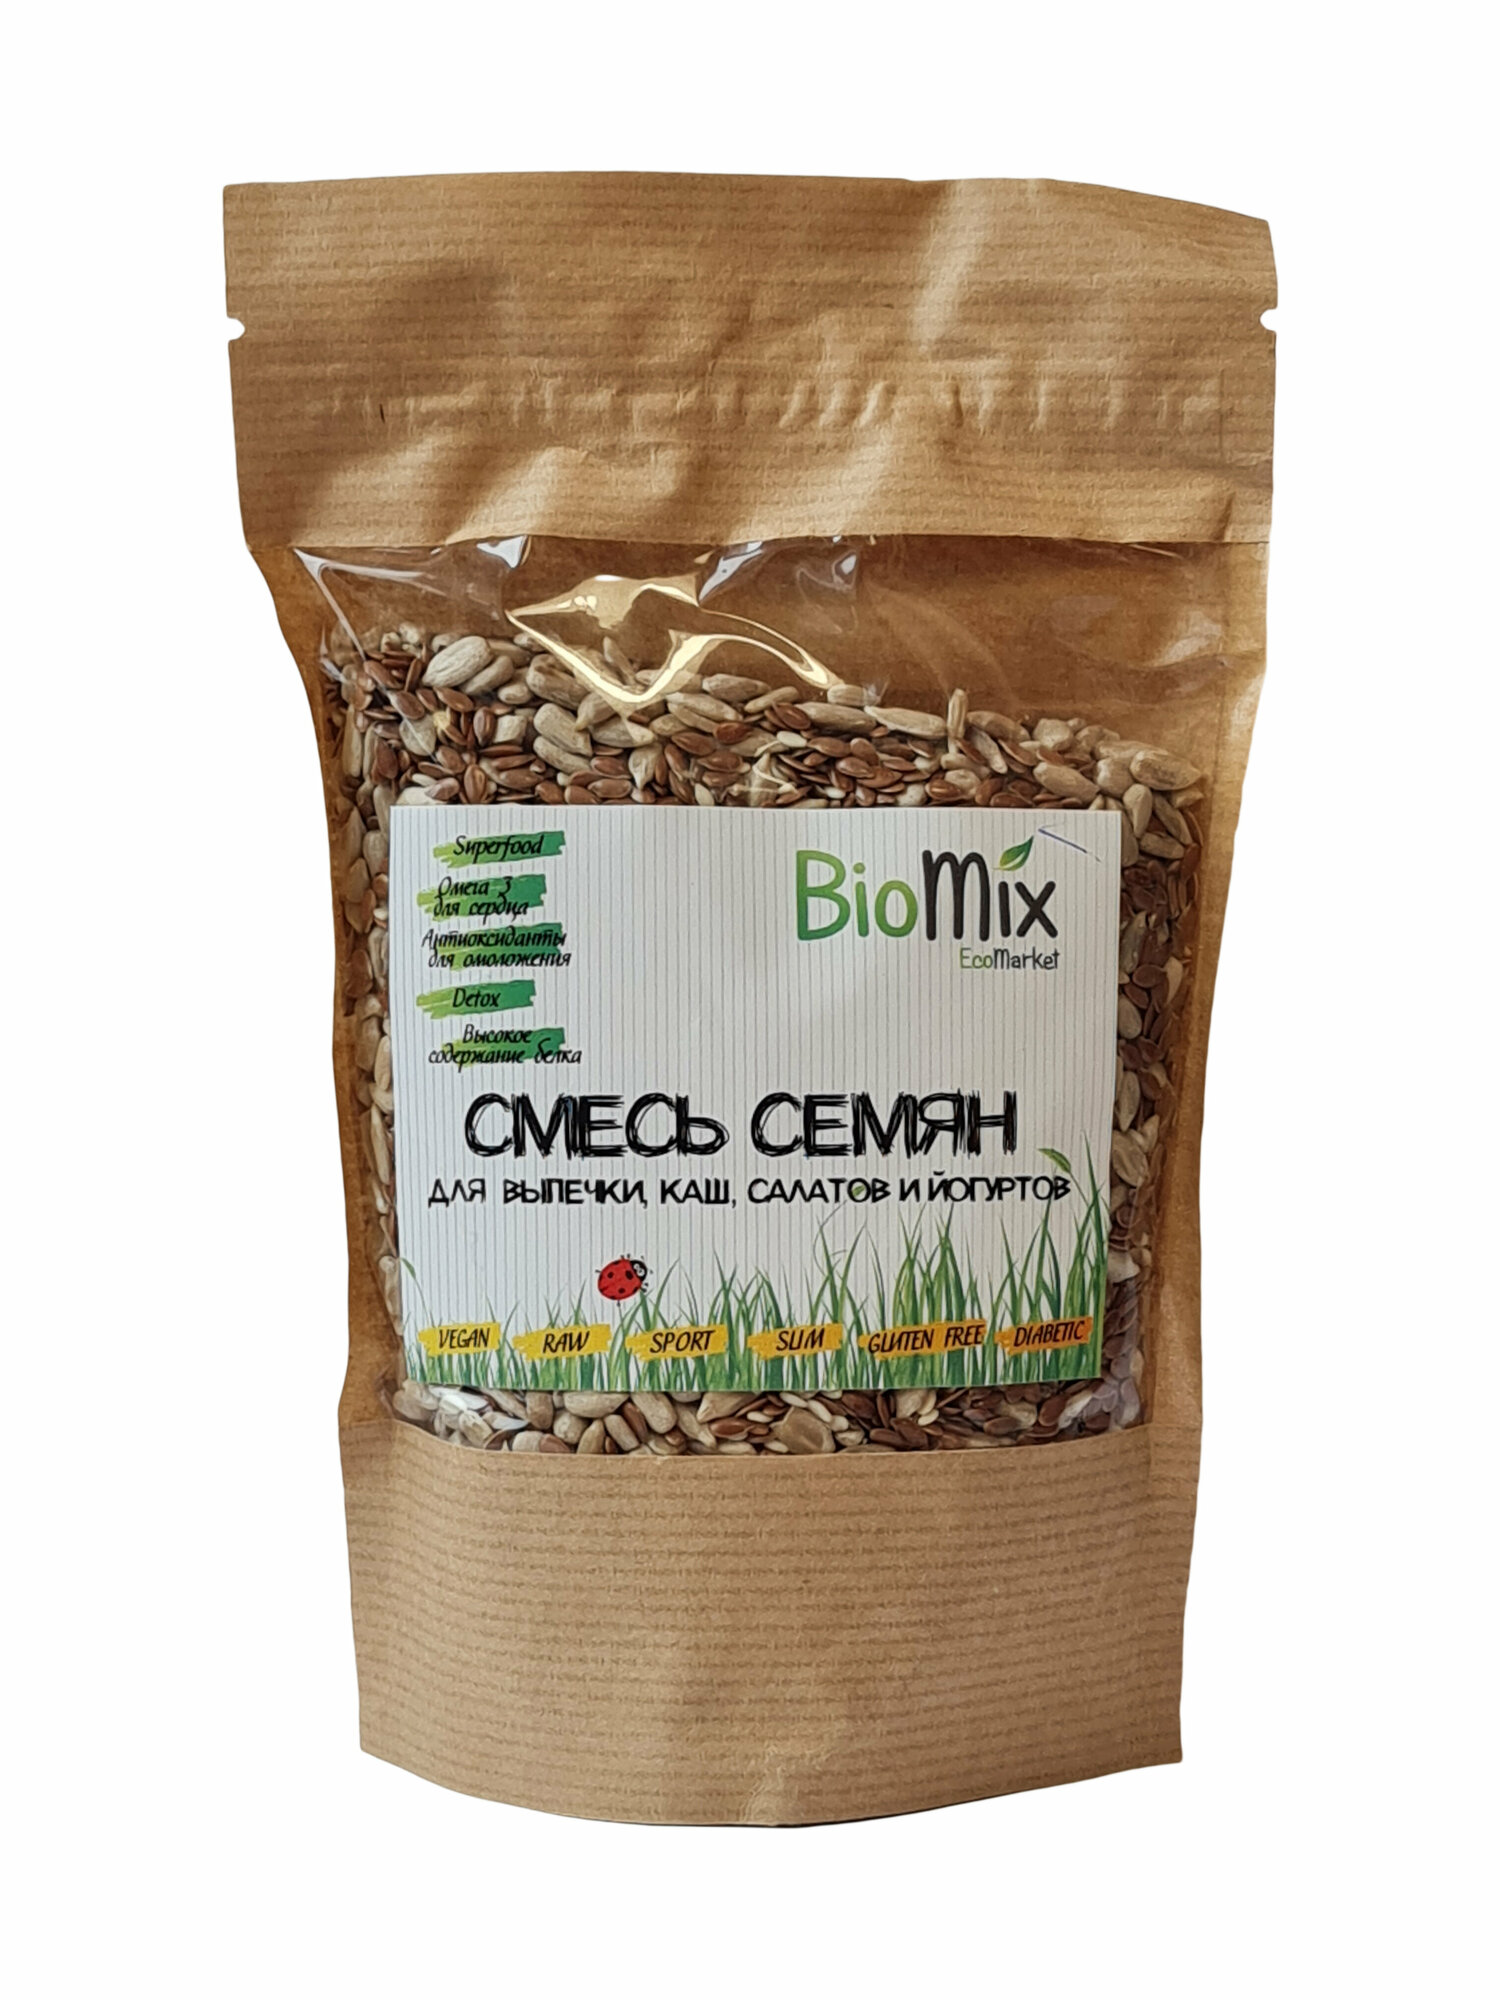 Семена BioMix смесь семян (для выпечки, каш, салатов и йогуртов) 200г